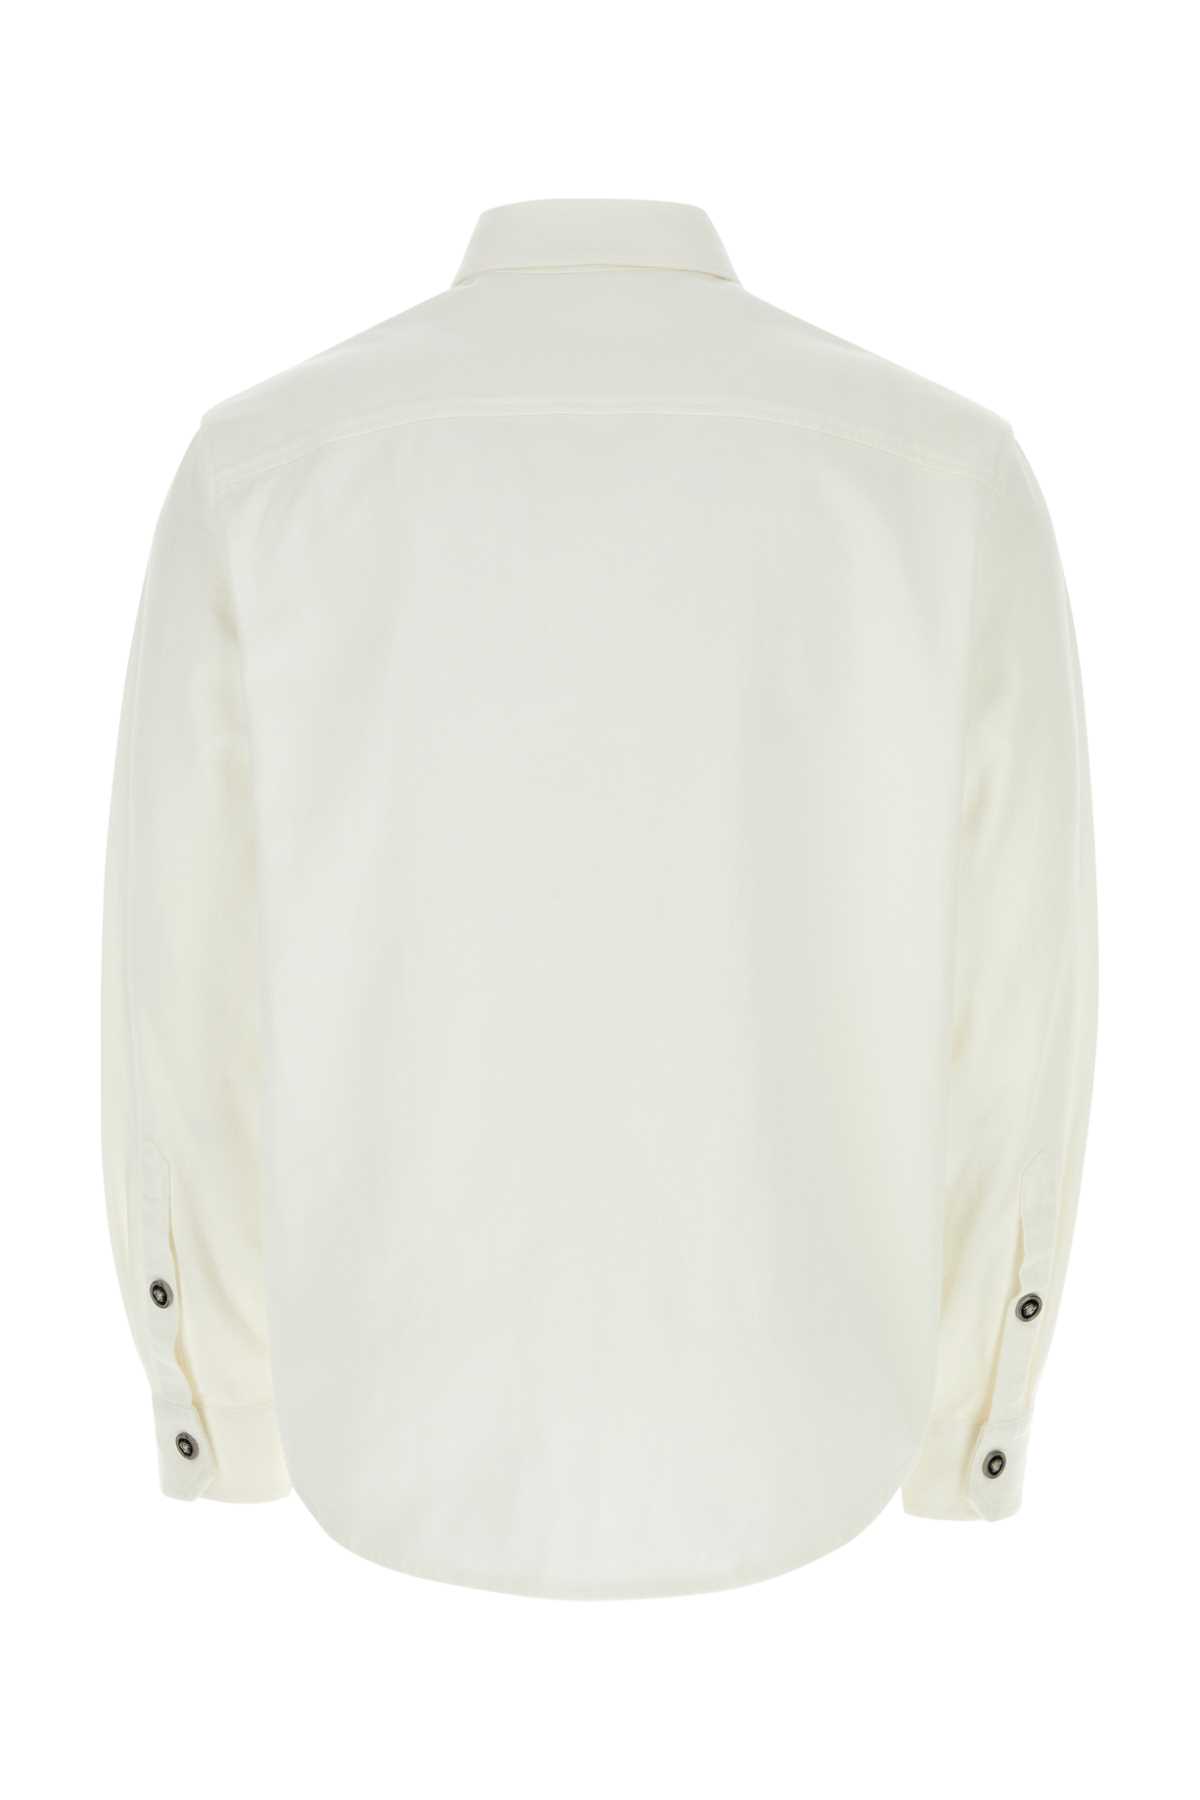 Versace White Denim Shirt